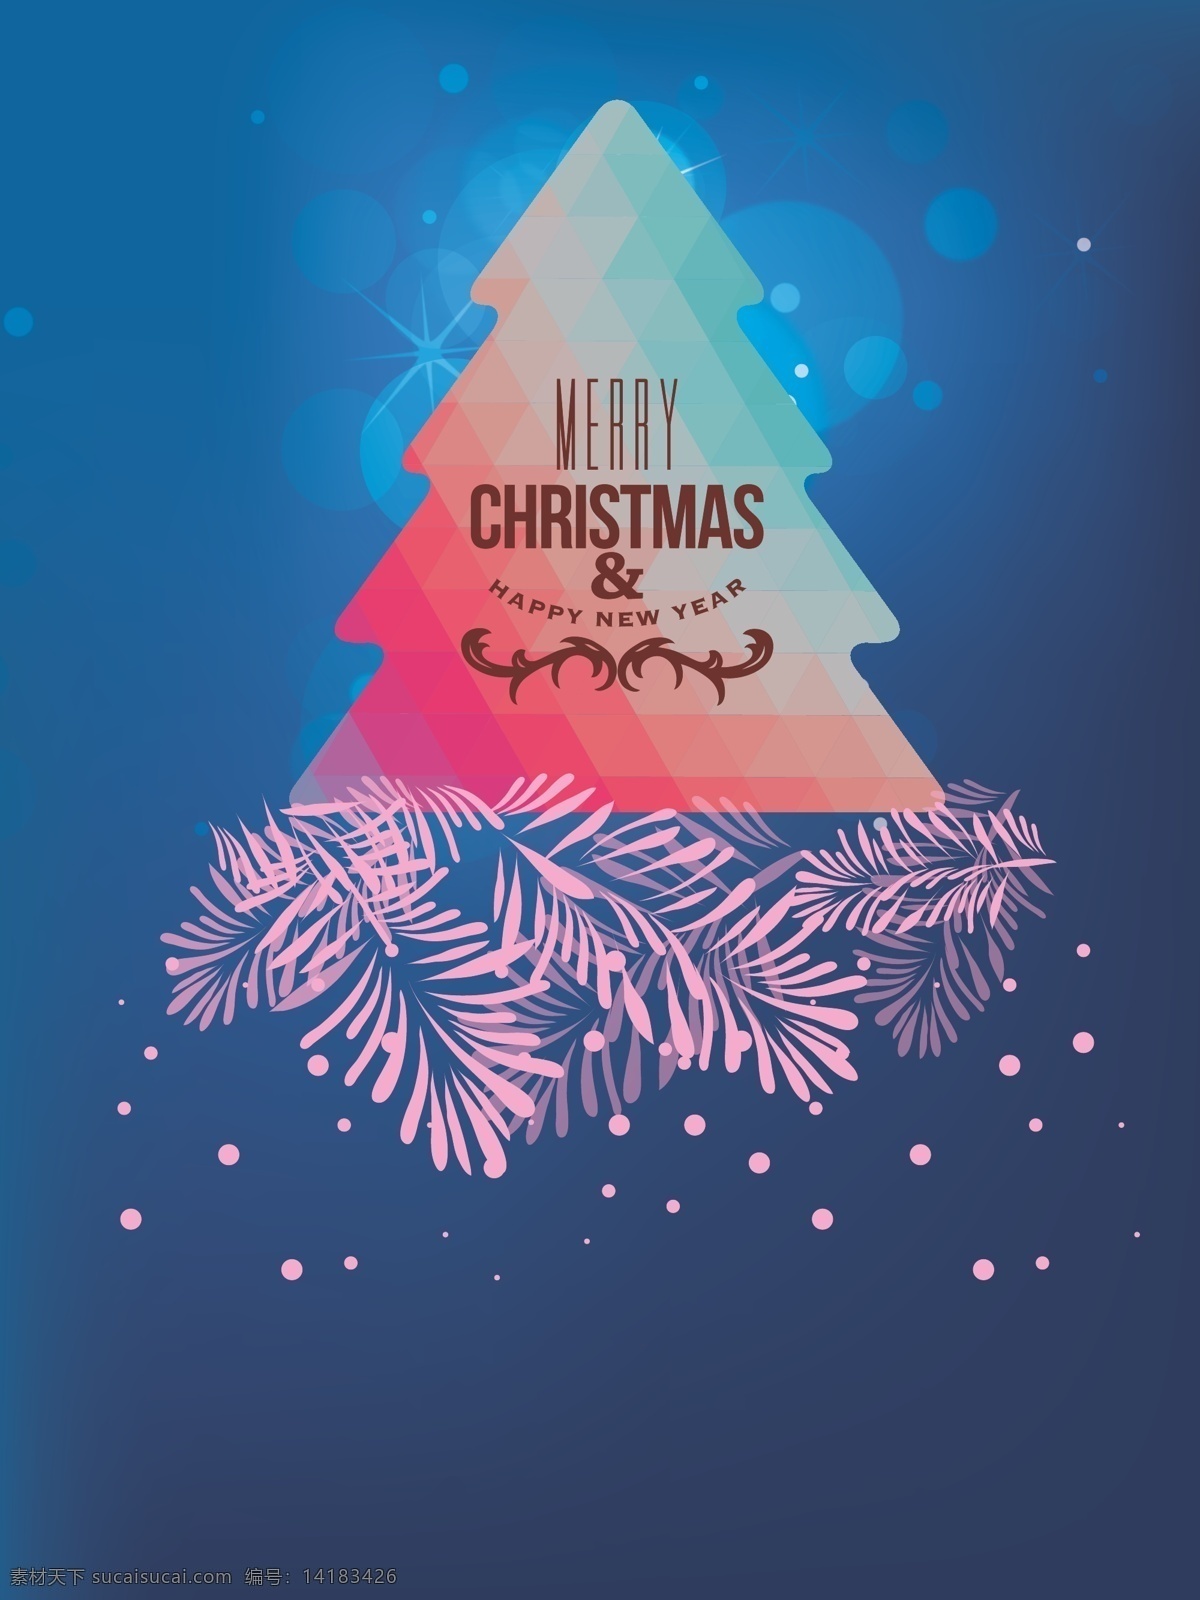 圣诞 派对 聚会 酒吧 矢量 背景 霓虹 圣诞树 蓝色 光晕 夜 海报 开心